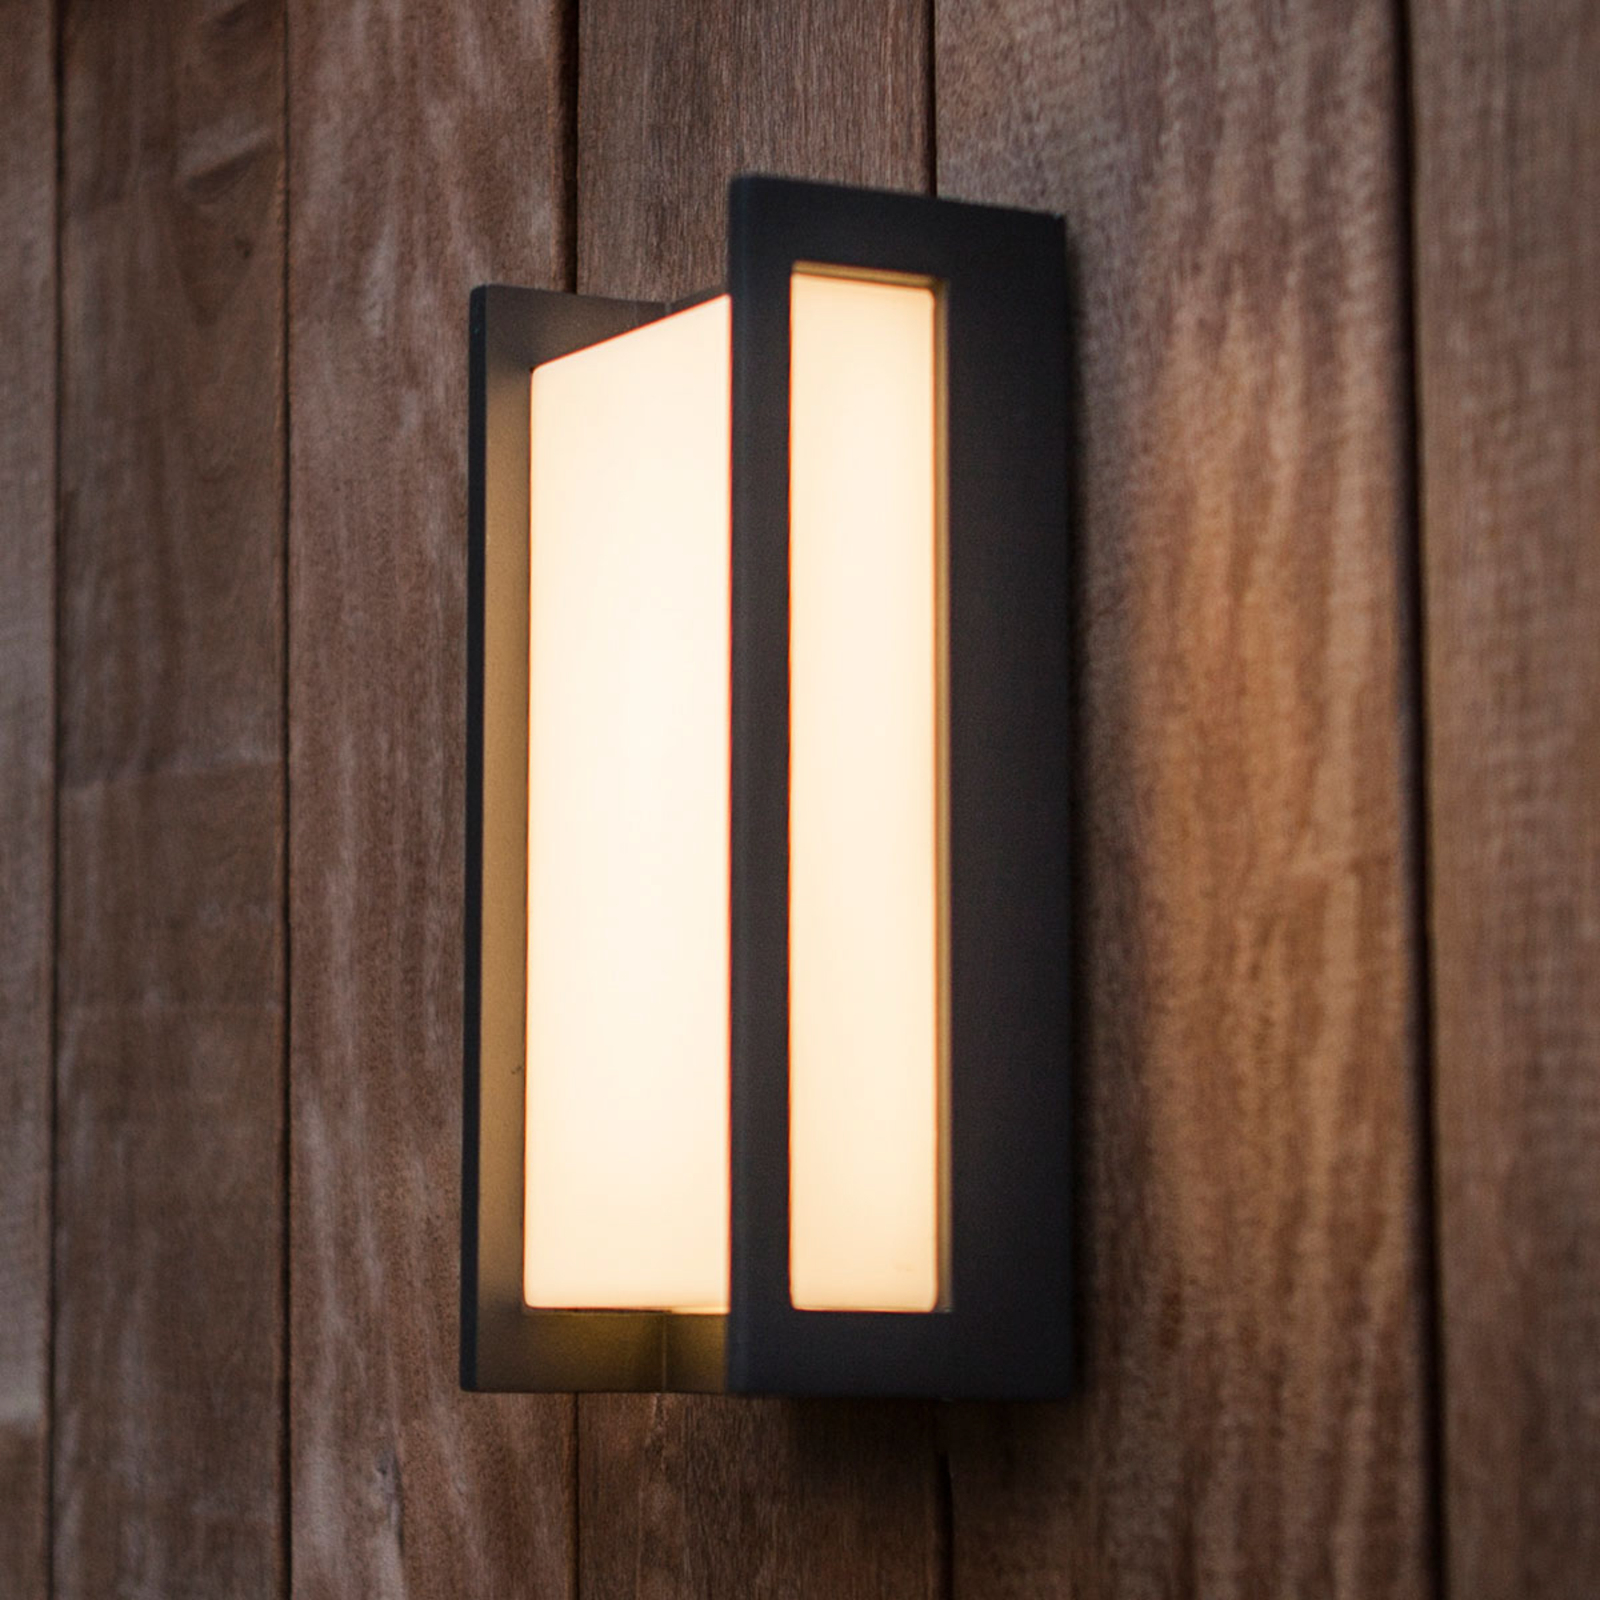 LED kültéri fali lámpa Qubo, 11cm x 22cm